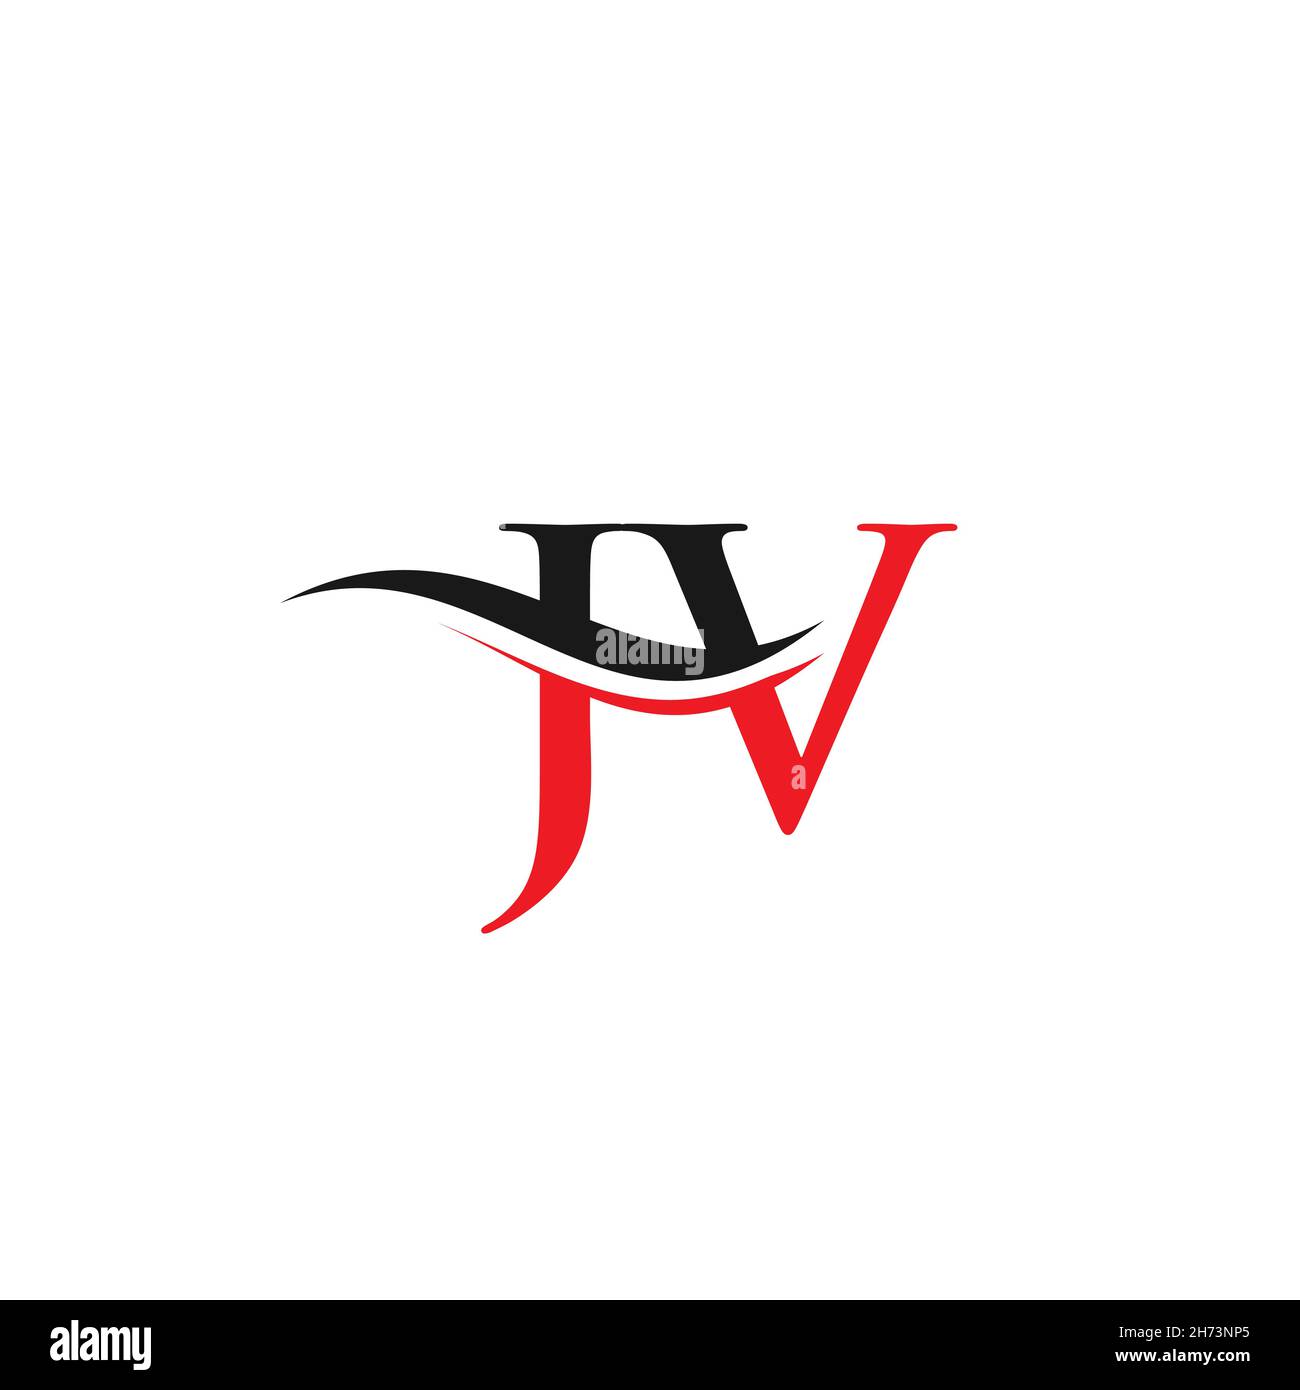 Jv Logo PNG Transparent Images Free Download, Vector Files